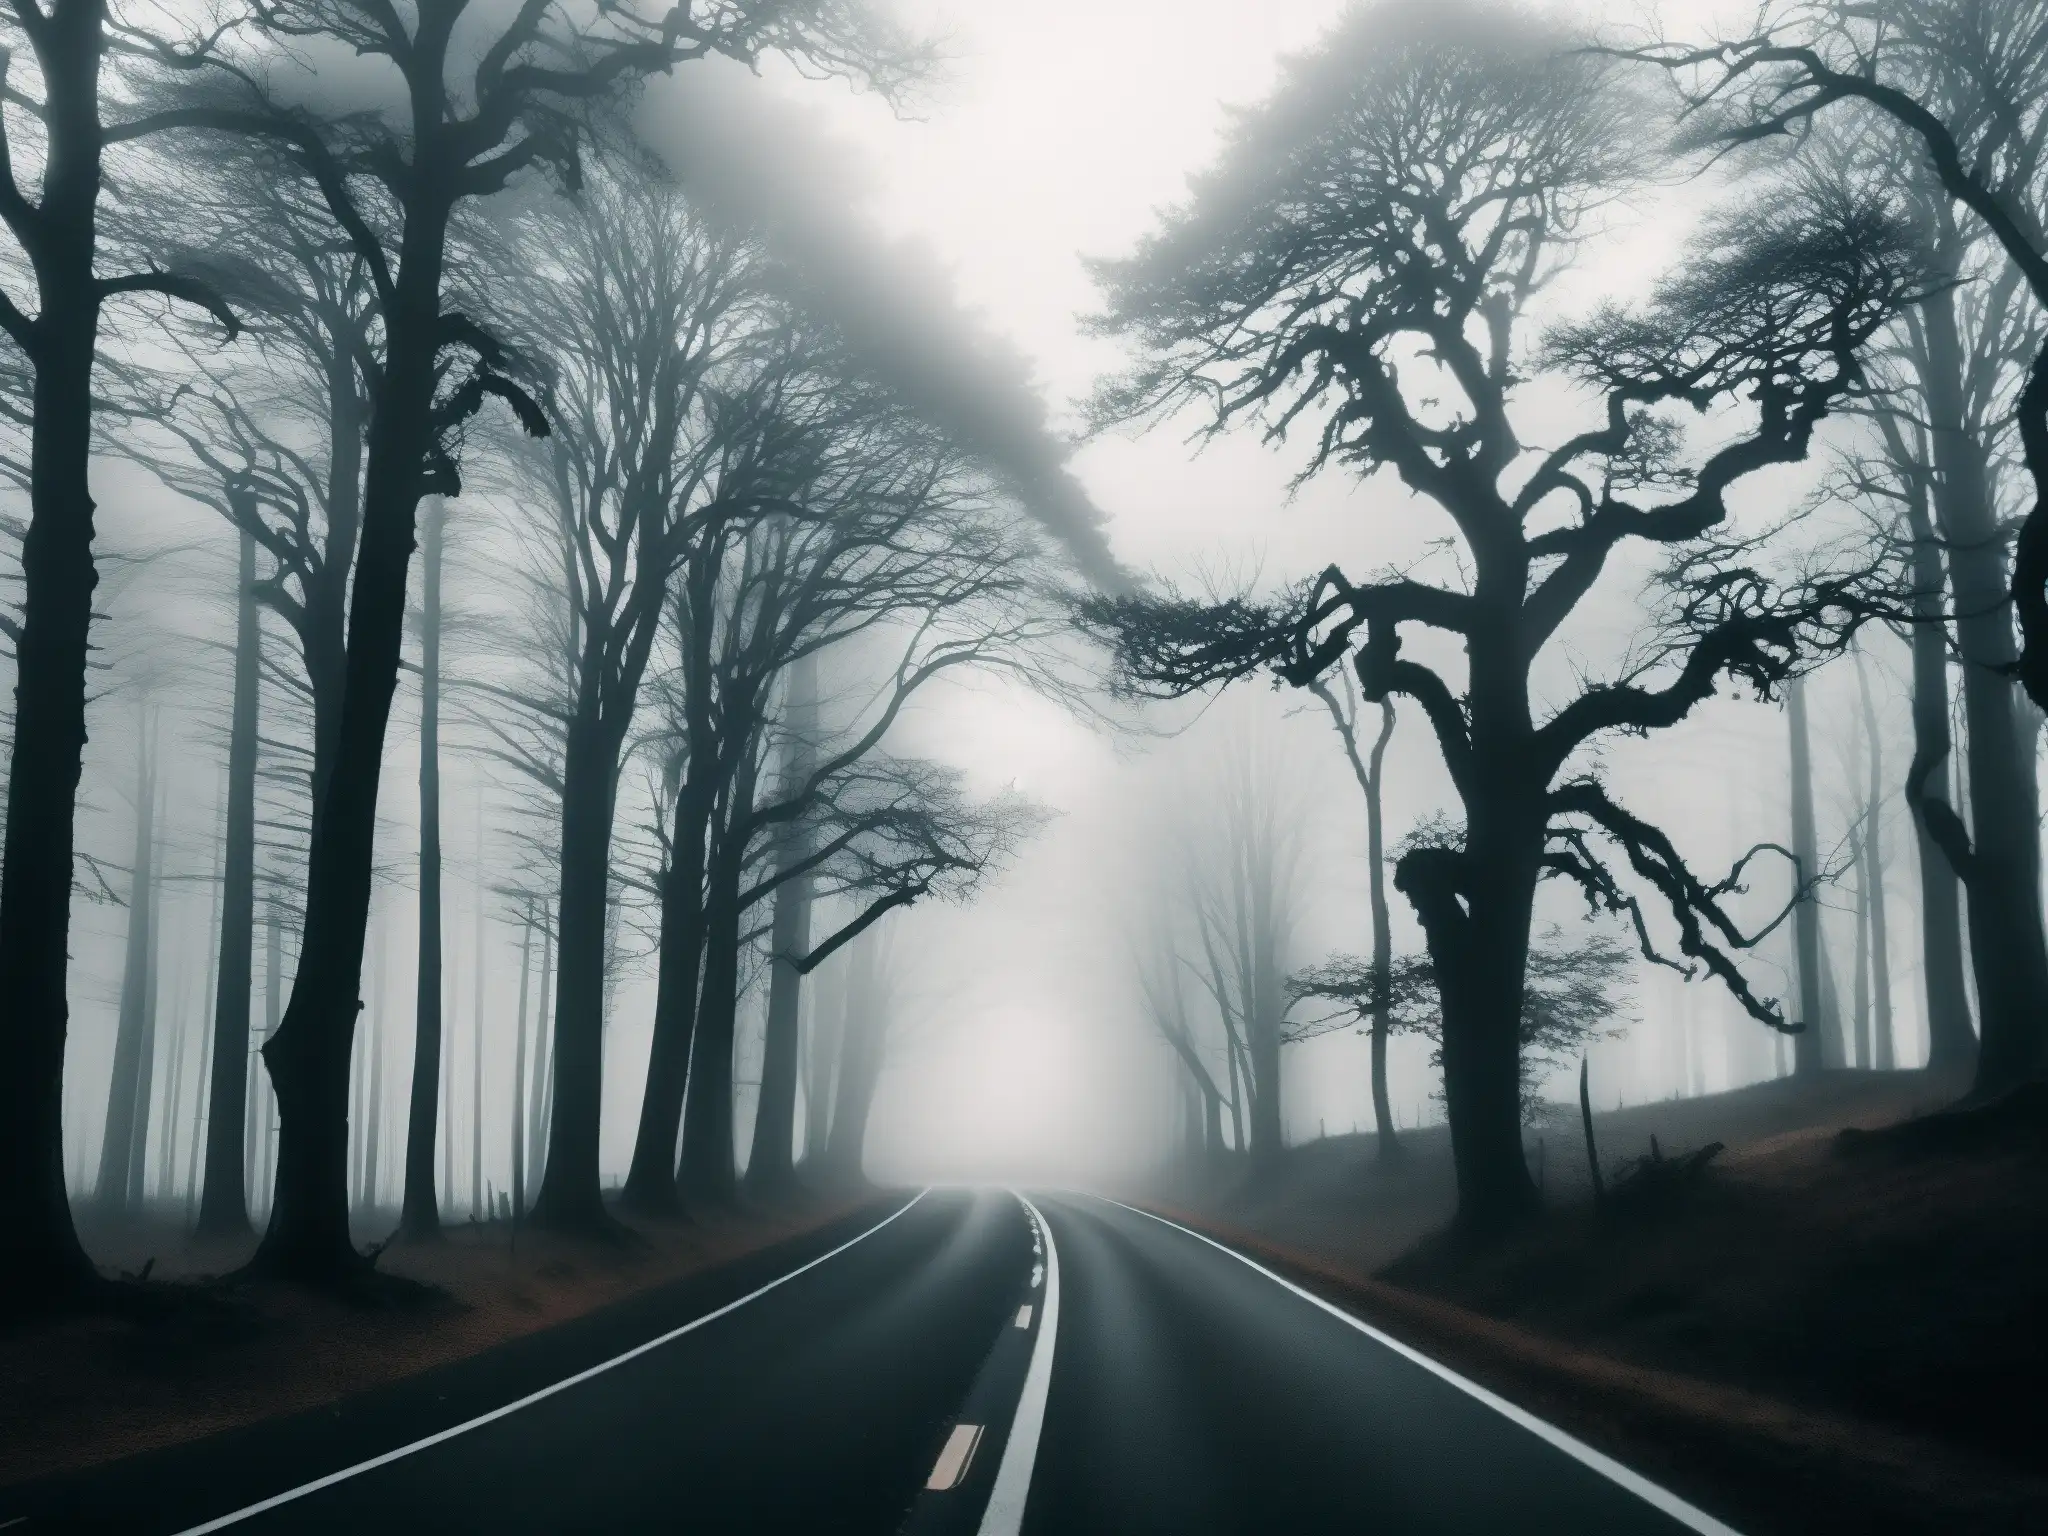 Escena misteriosa de un bosque con un camino serpenteante, árboles retorcidos y una figura oscura a caballo emergiendo de la neblina